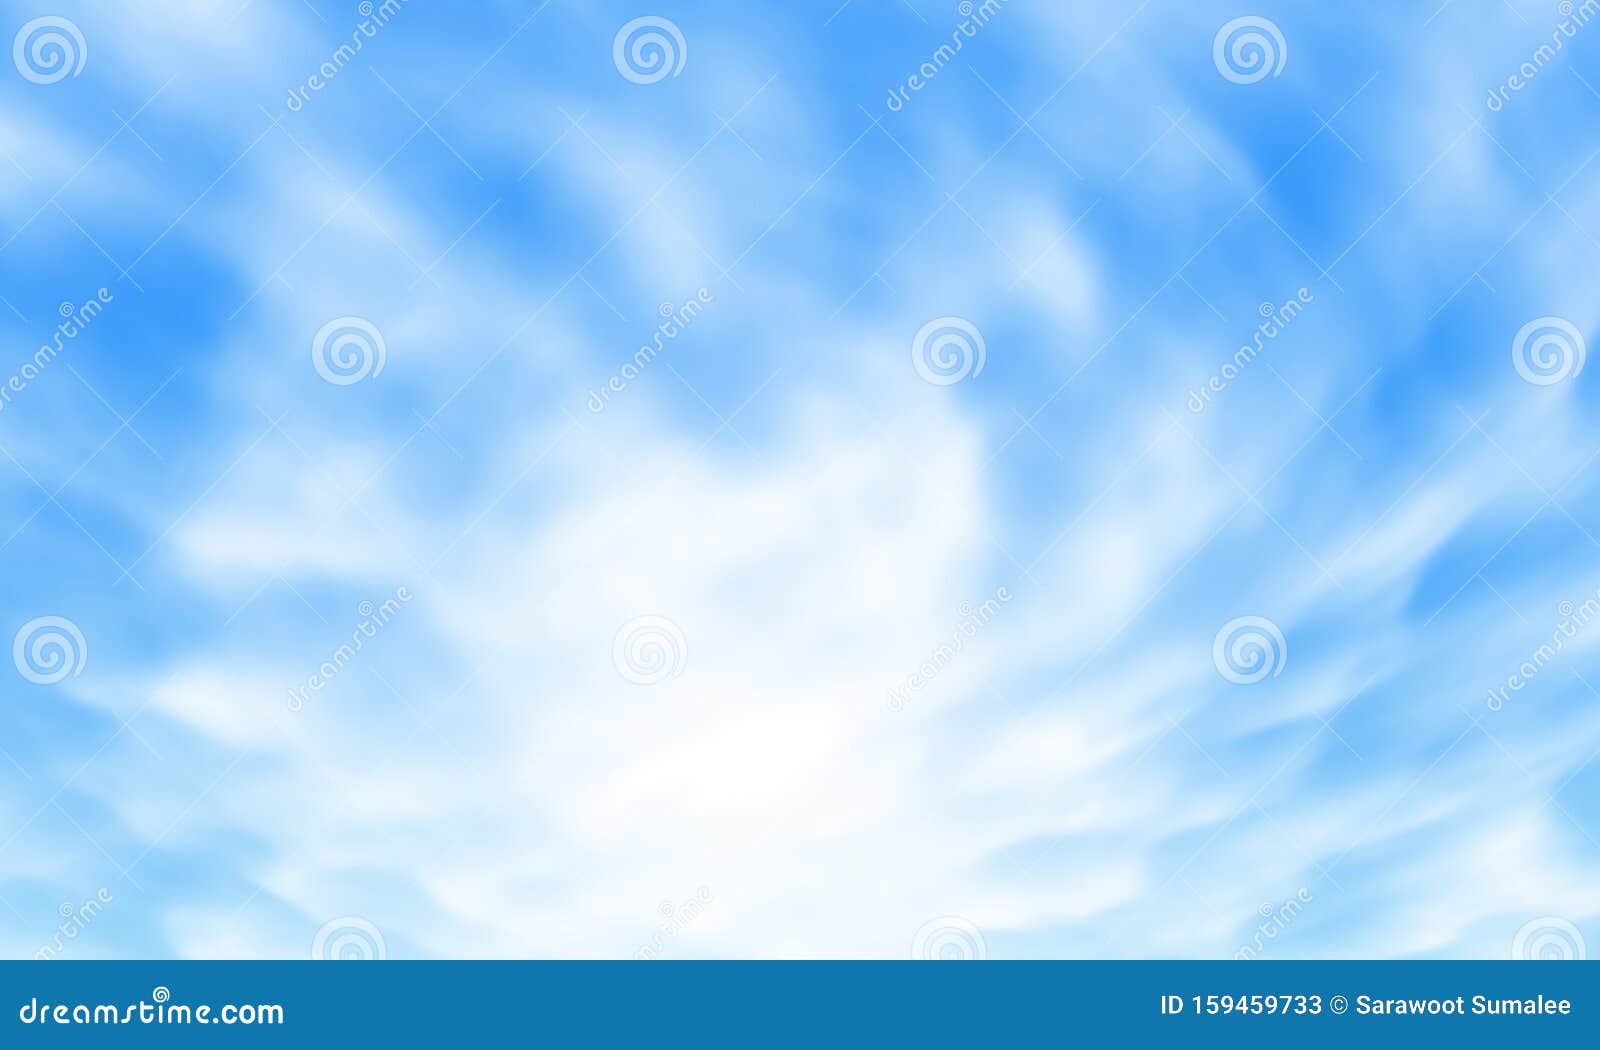 Thoả sức ngắm nhìn nền trời xanh trong veo với những đám mây trắng di chuyển tạo thành một bức tranh thiên nhiên đẹp mê hồn. Hình ảnh chắc chắn sẽ khiến bạn say đắm và muốn tiếp tục chiêm ngưỡng.